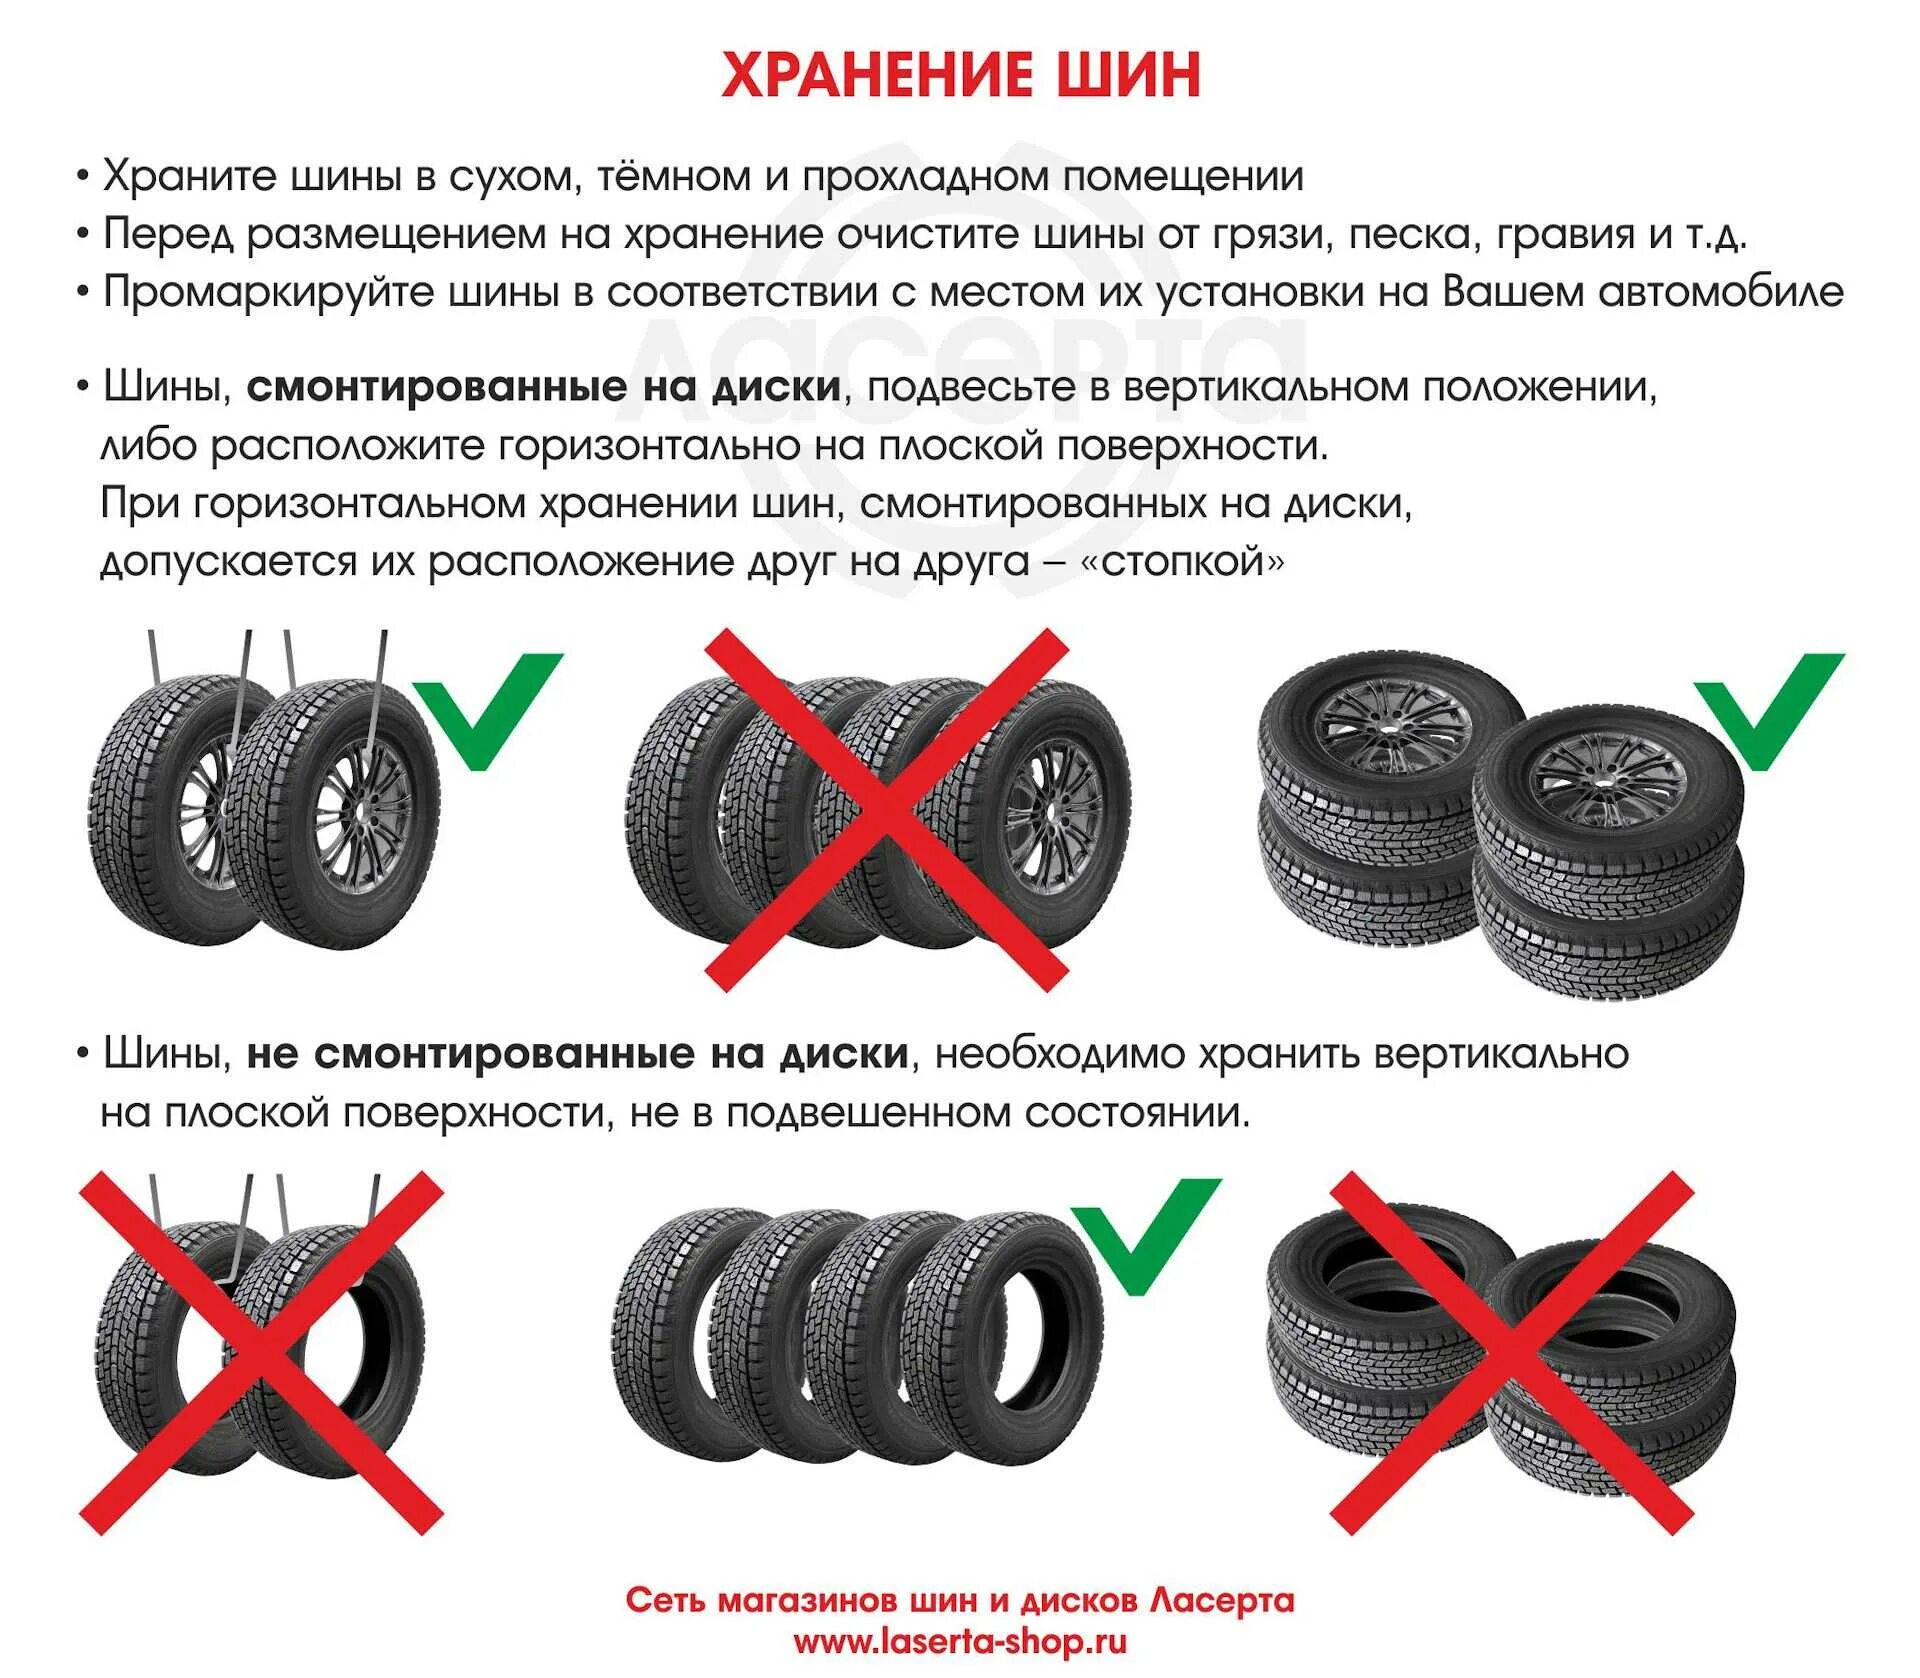 Сколько колес у автомобиля. Правила хранения автомобильных шин. Как правильно хранить диски без резины. Как правильно хранить зимнюю резину без дисков. Как хранить шины без дисков в домашних условиях.